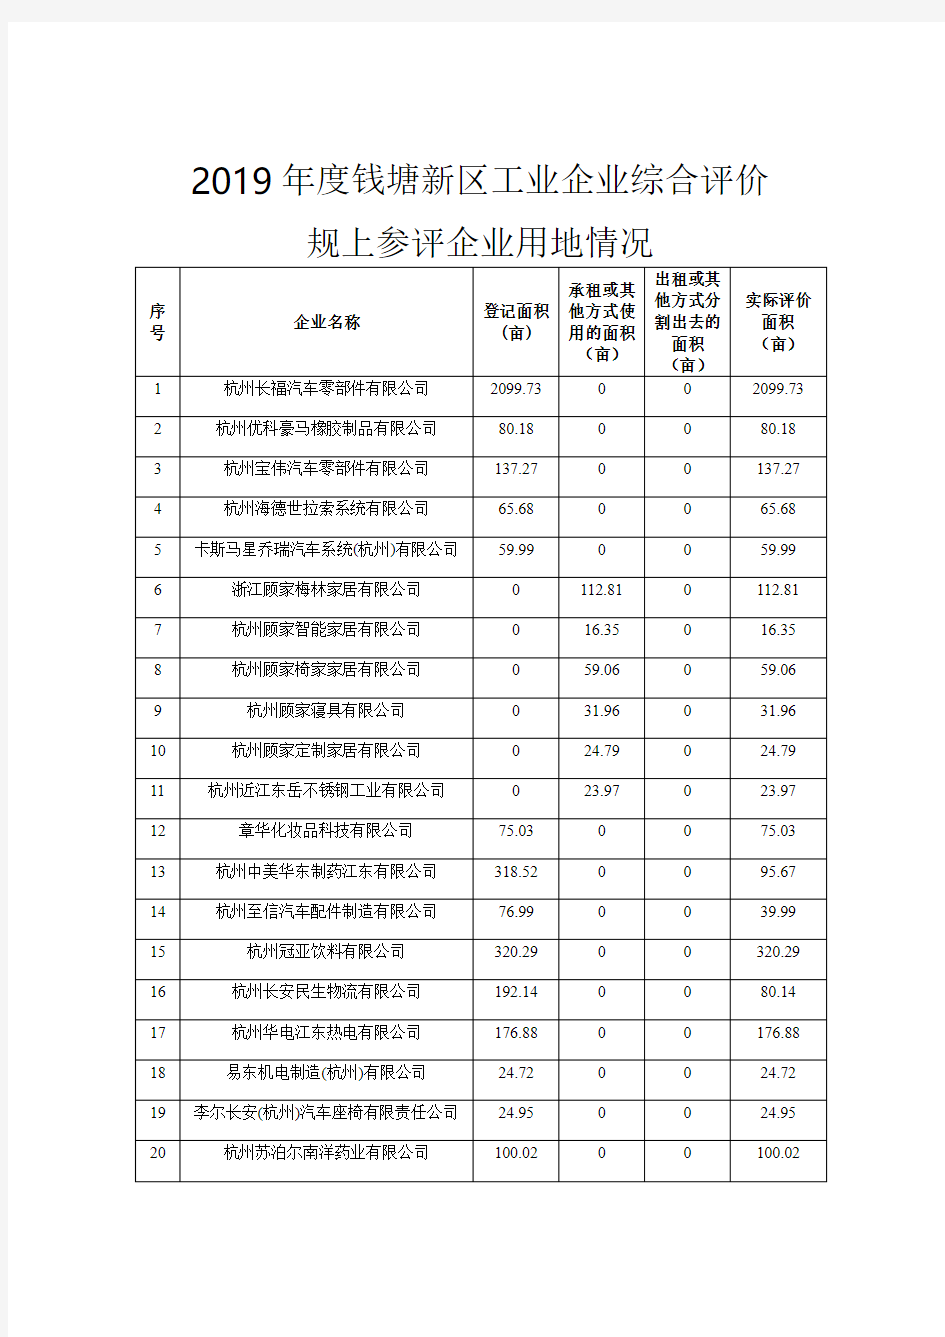 2019年度钱塘新区工业企业综合评价